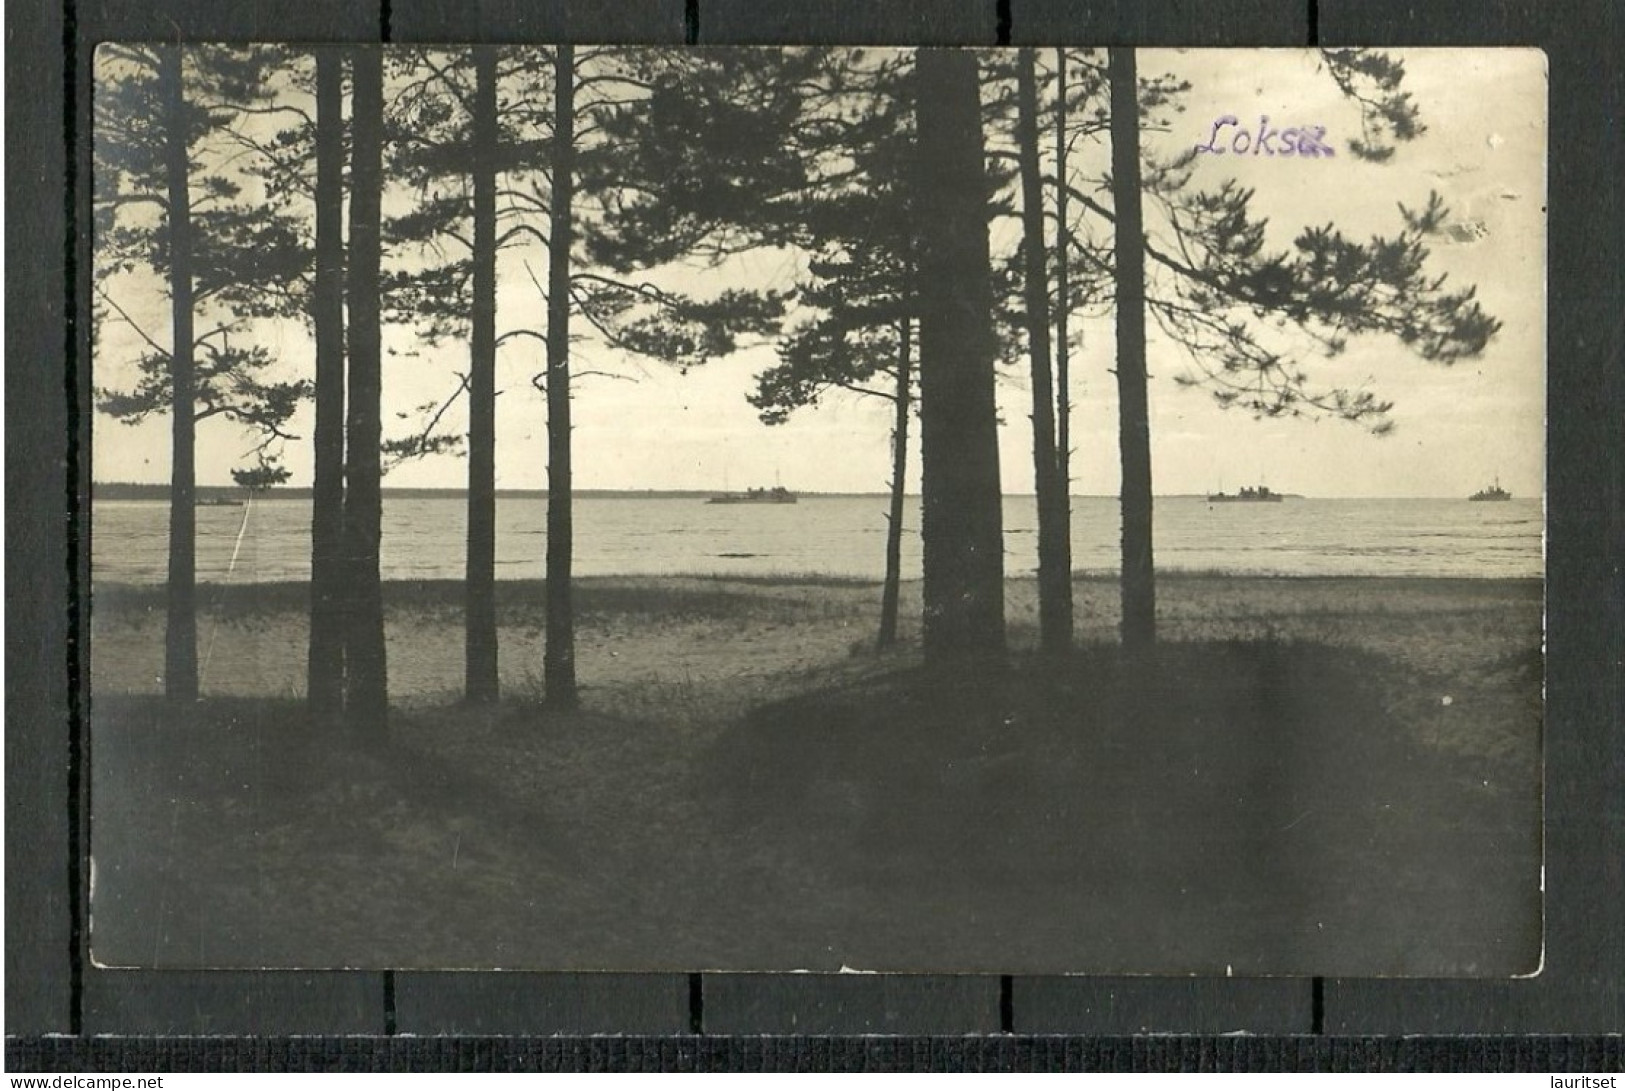 Estonia Estland Ca. 1920 LOKSA Strand Ships Schiffe, Photo Post Card, Unused - Estonia